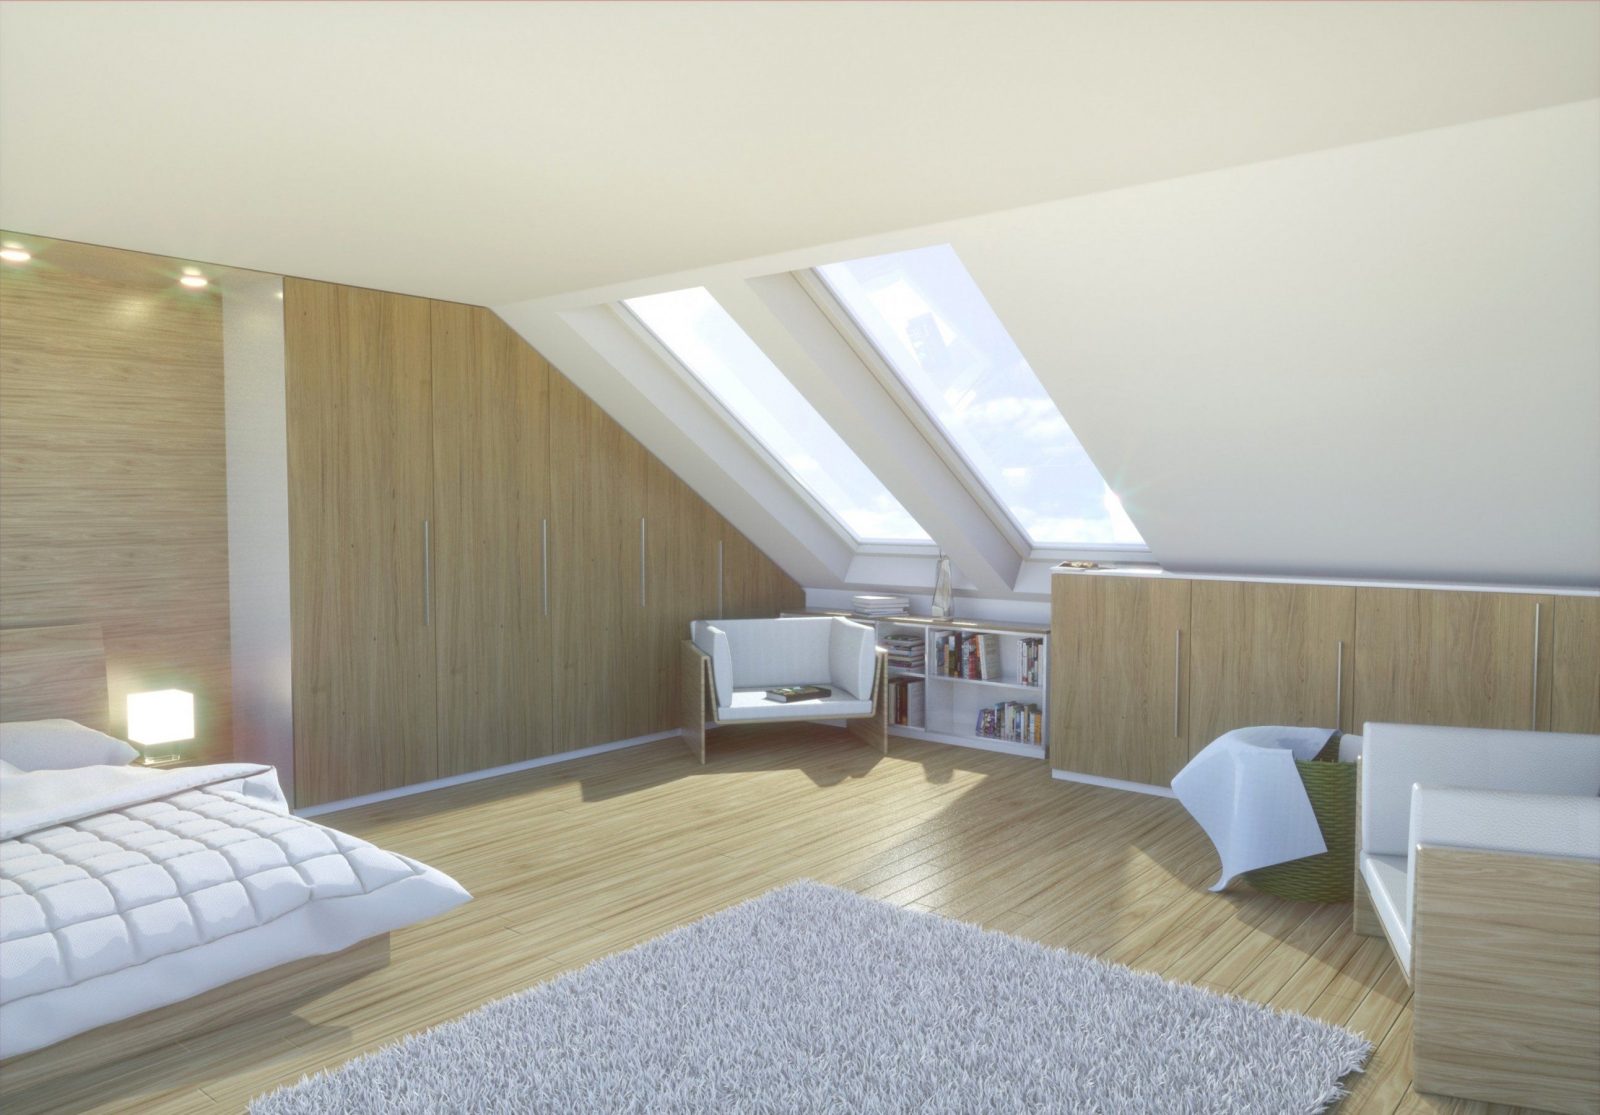 Luxuriös Atemberaubend Schlafzimmer Mit Dachschräge Gestalten Fotos von Schlafzimmer Gestalten Mit Dachschräge Photo